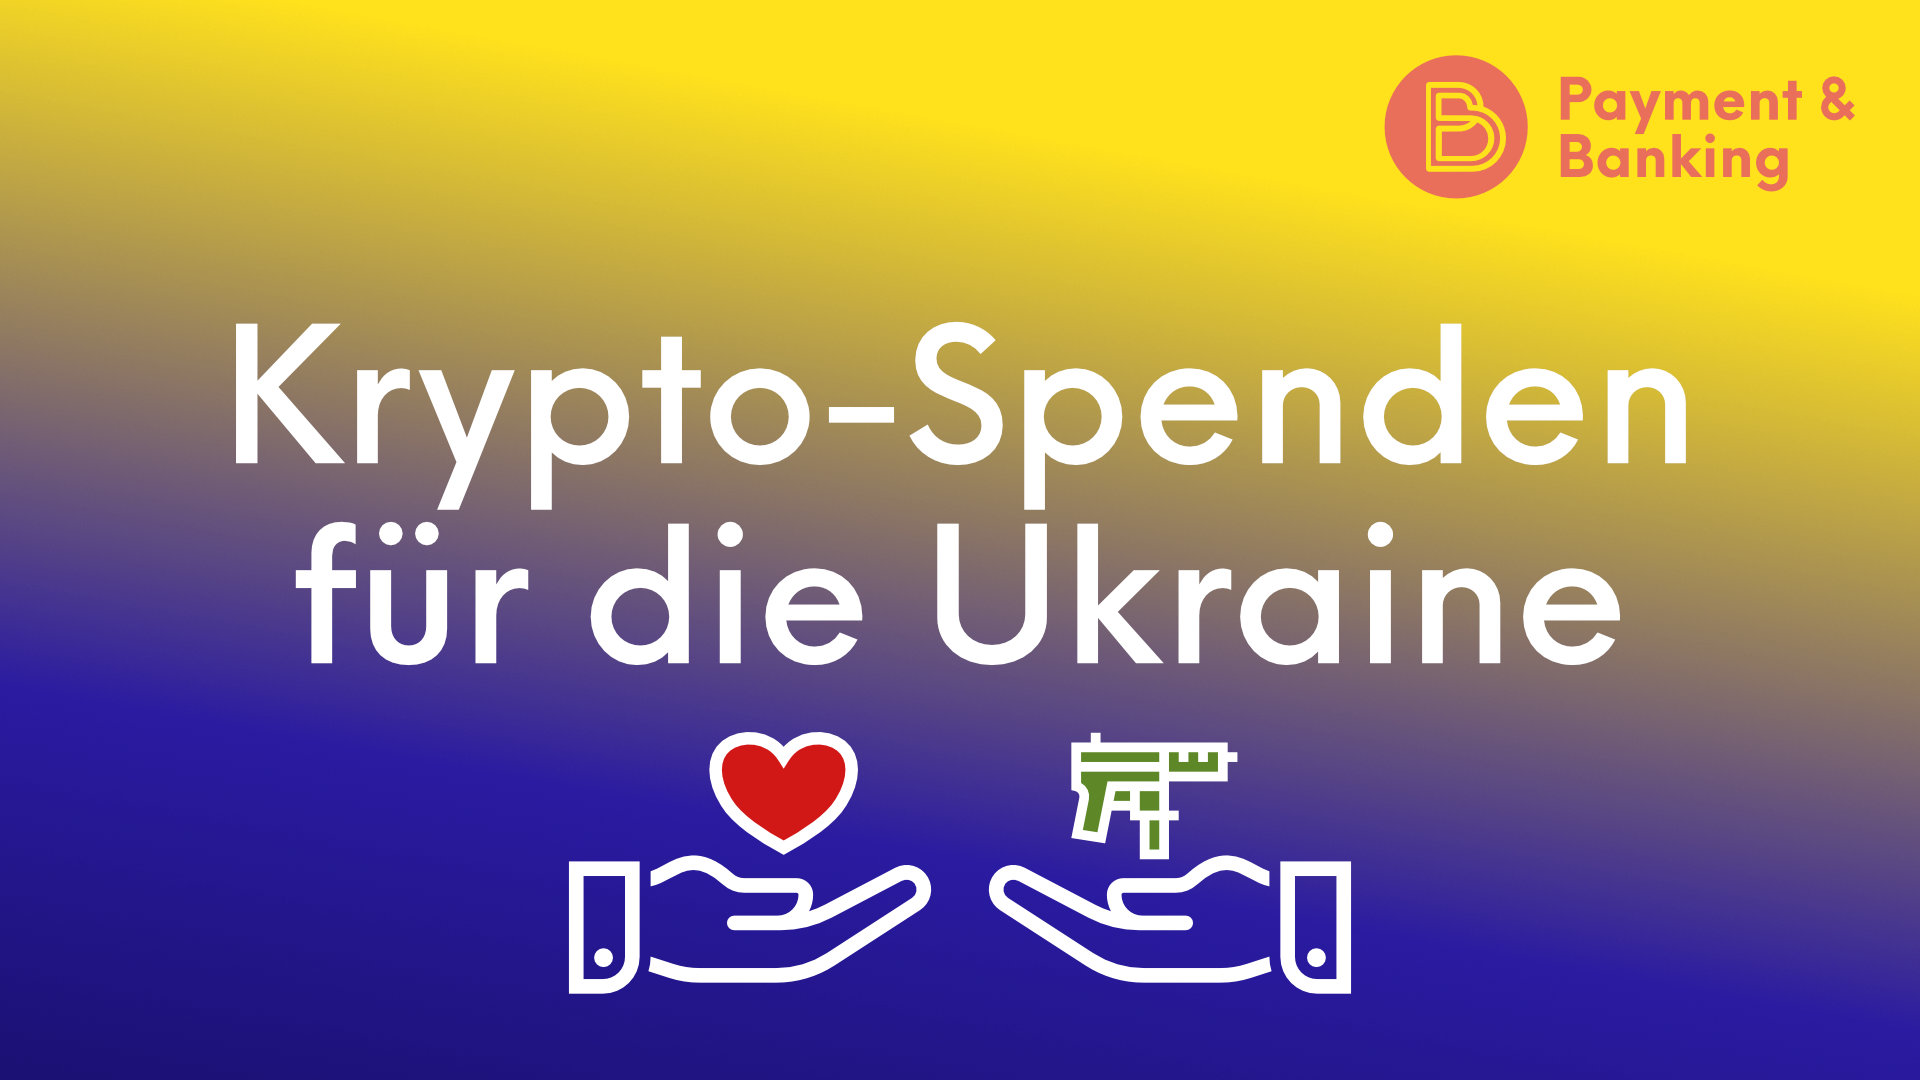 Ukraine-Krypto-Spenden-Aufmacher